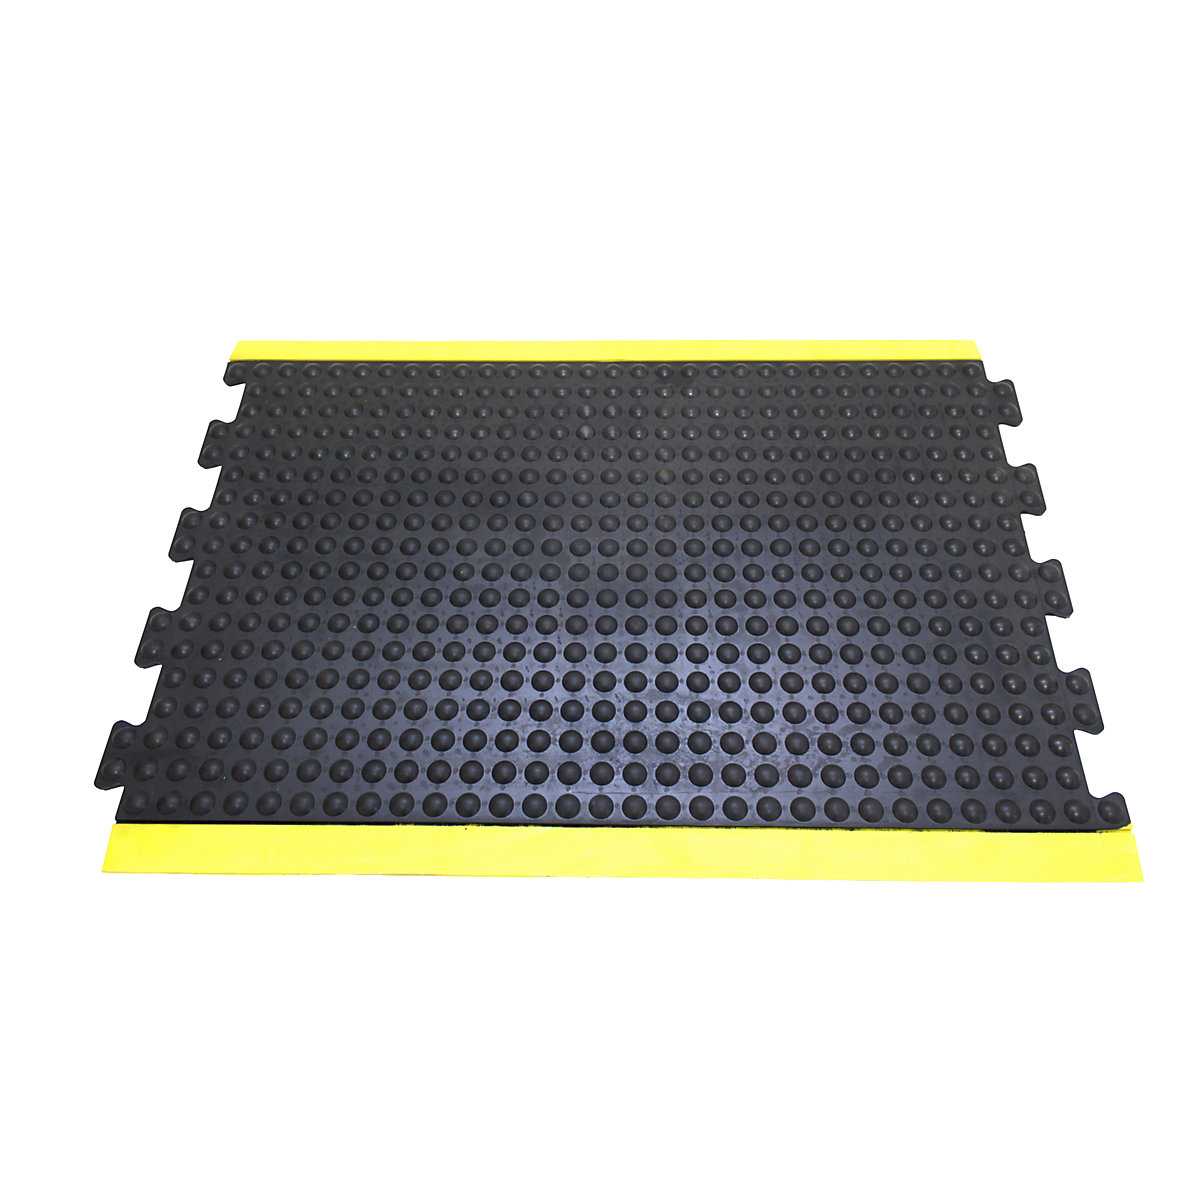 Anti-Ermüdungsmatte Bubblemat safety COBA, LxBxH 900 x 600 x 14 mm, schwarz-gelb, Mittelelement-5